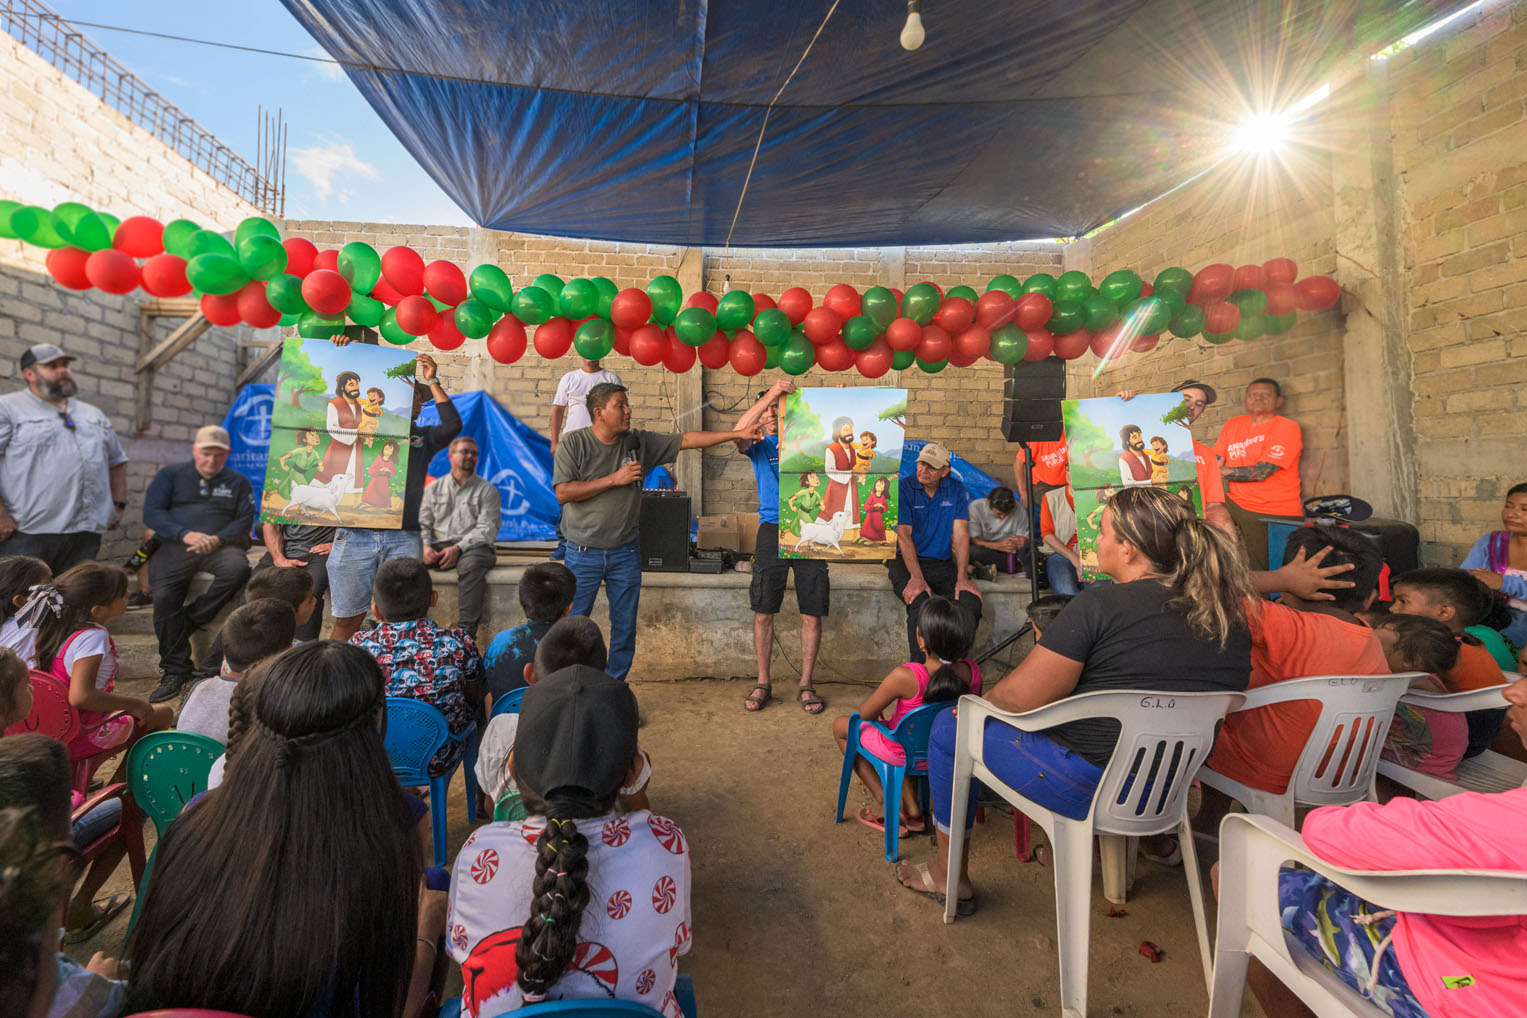 Cientos de niños escucharon las Buenas Nuevas de Jesucristo. Miles de niños de todo el estado de Guerrero escucharán el evangelio en los eventos de evangelismo que habrá durante las próximas semanas y meses.